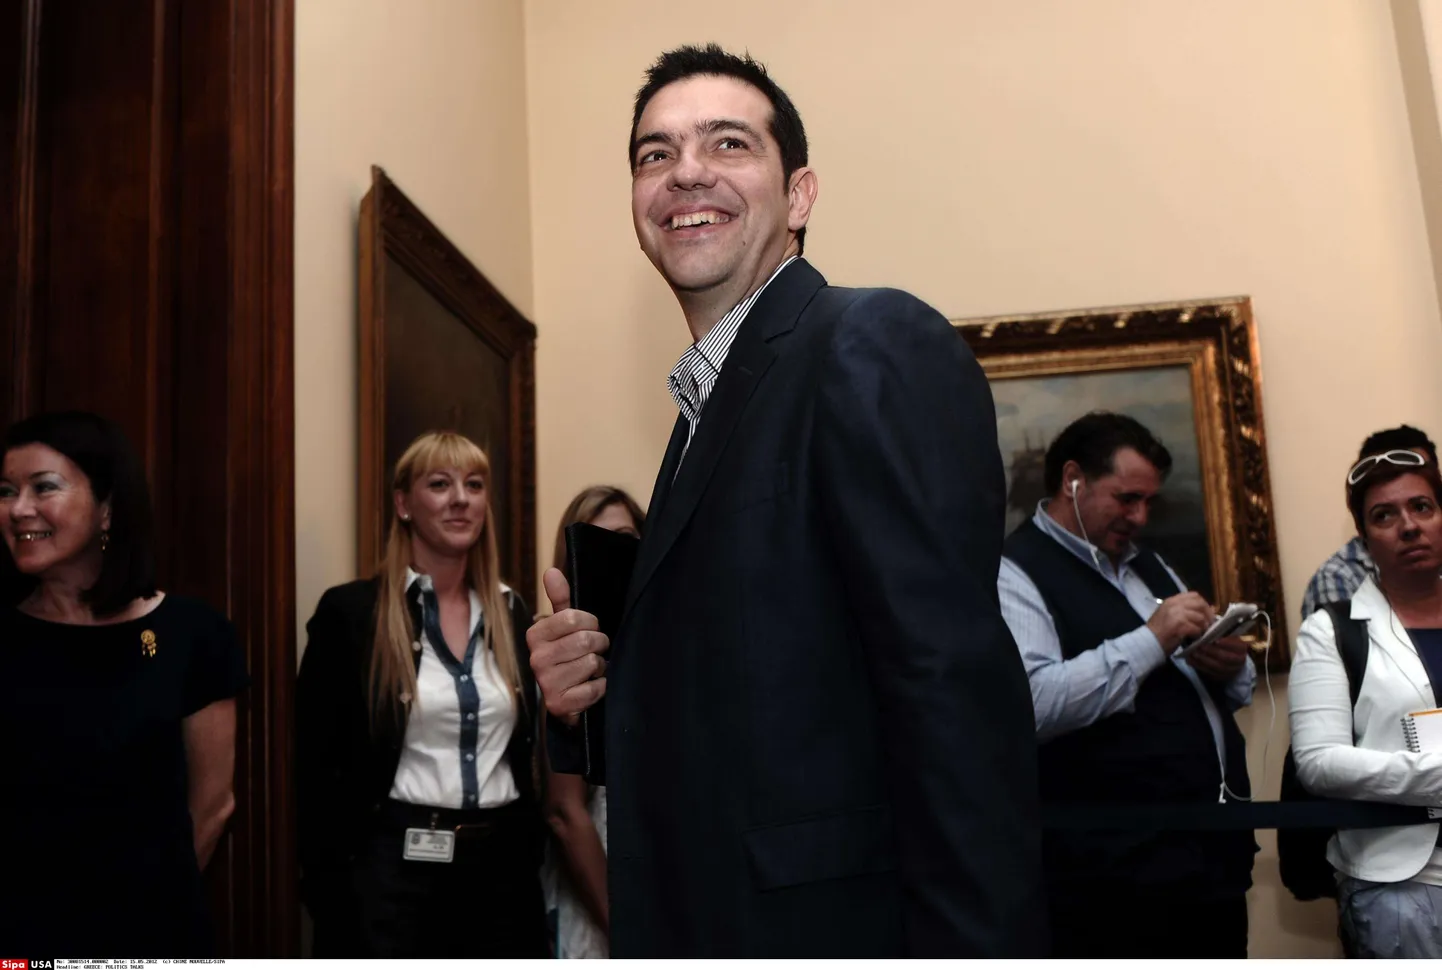 Kreeka vasakpoolsete liider Alexis Tsipras